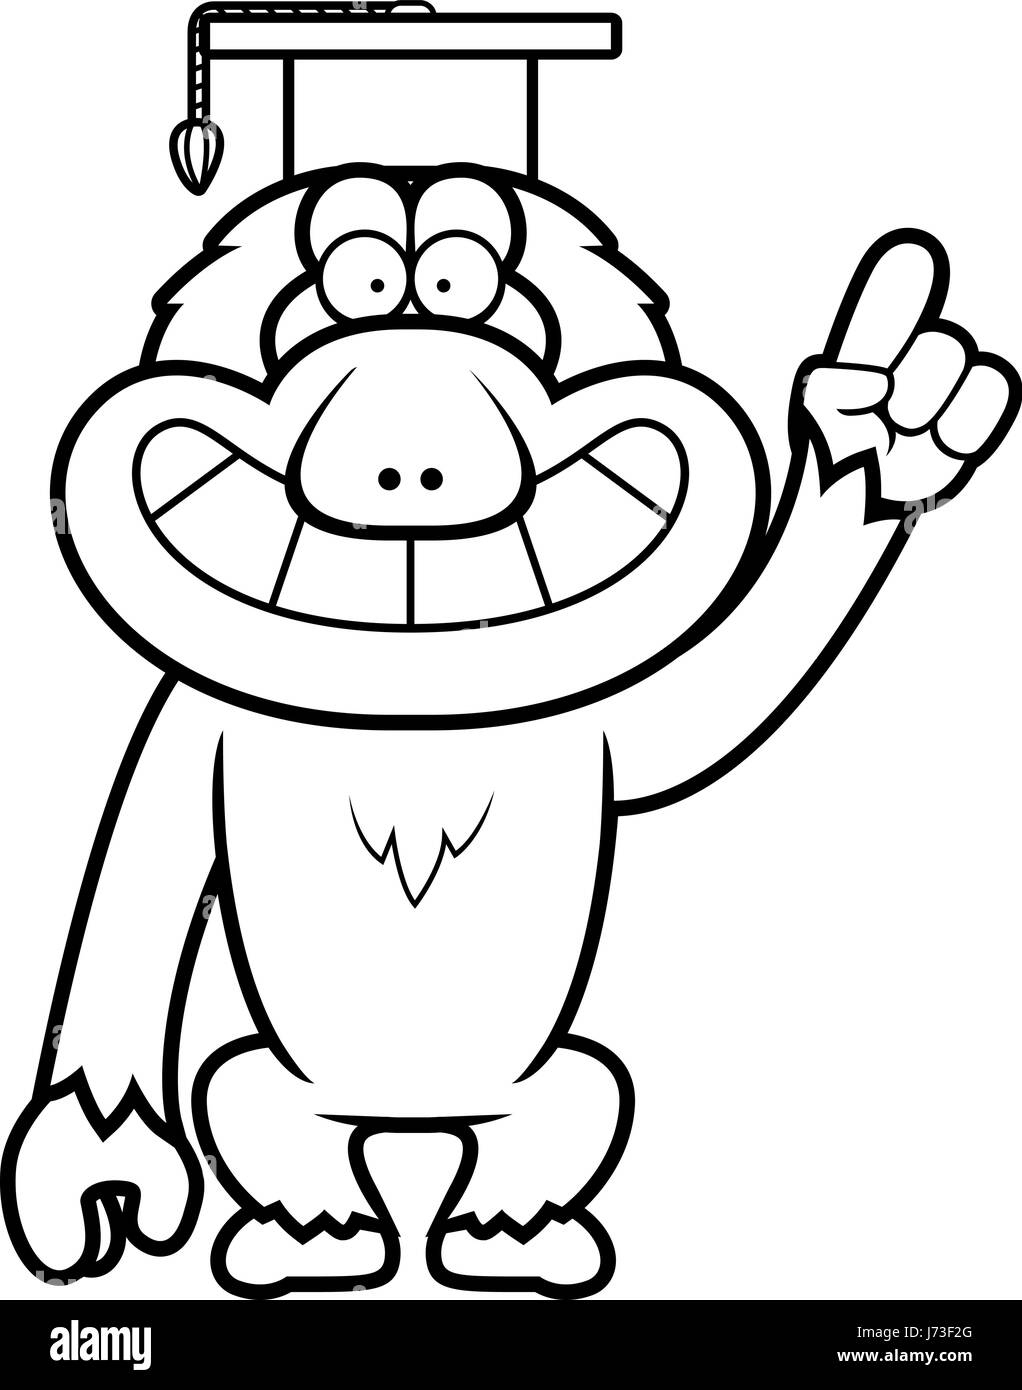 Un cartoon illustrazione di un Macaque giapponese in un professore cap. Illustrazione Vettoriale